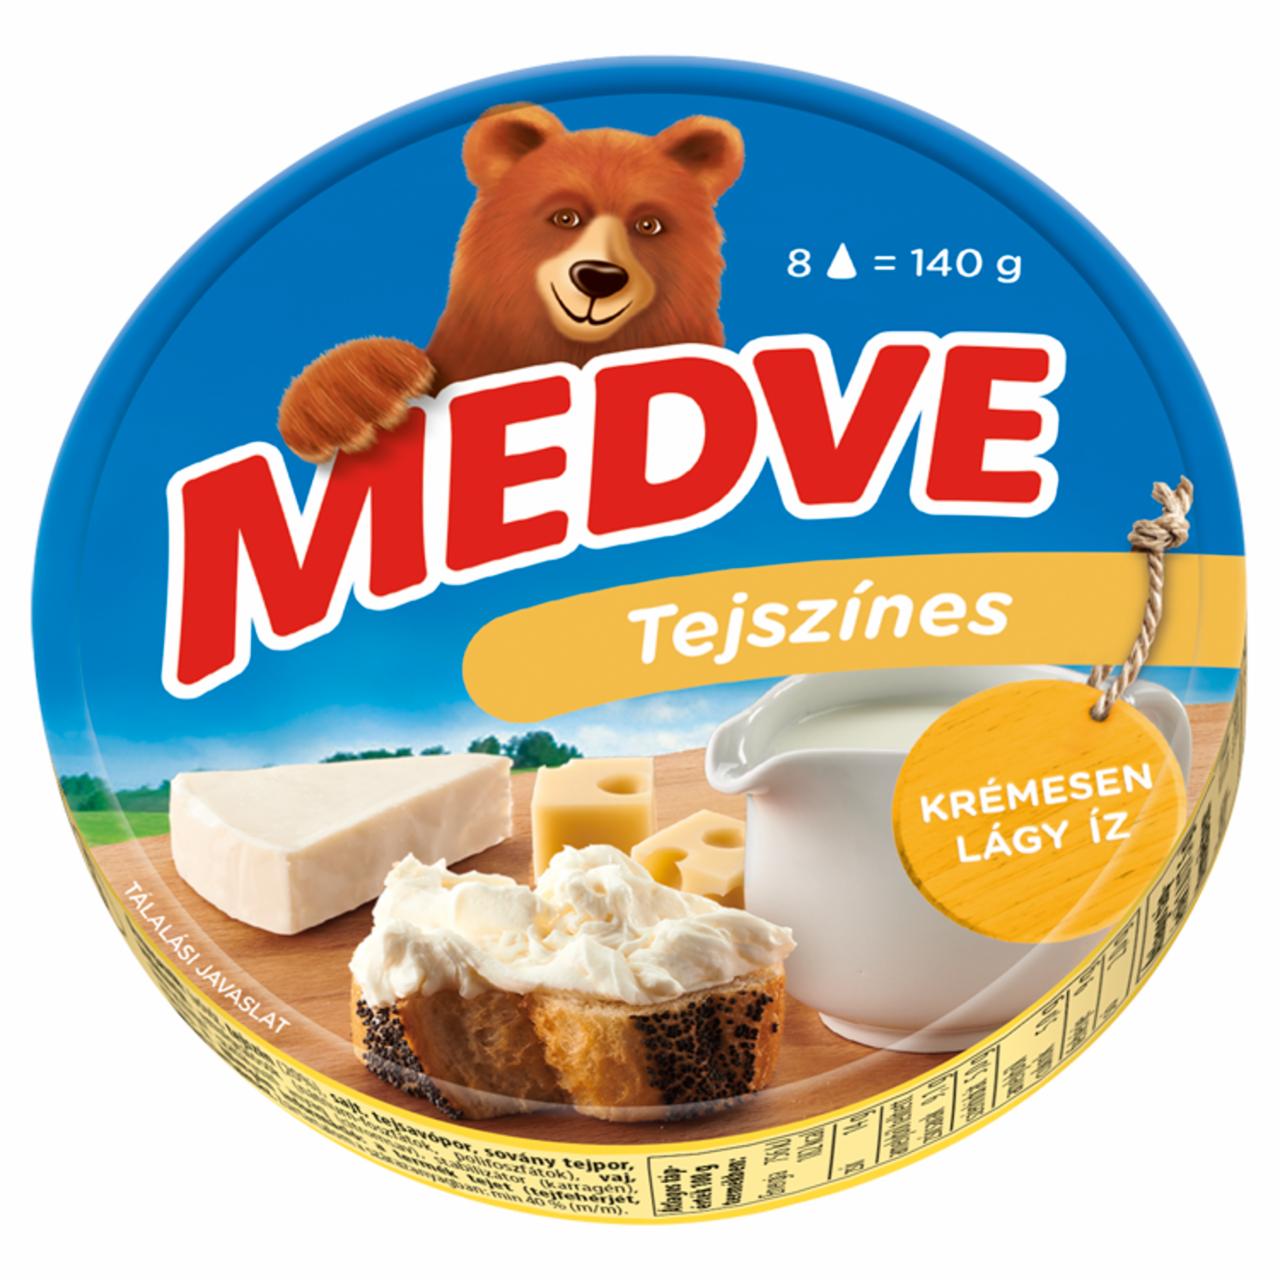 Képek - Medve tejszínes kenhető, félzsíros ömlesztett sajt 8 x 17,5 g (140 g)